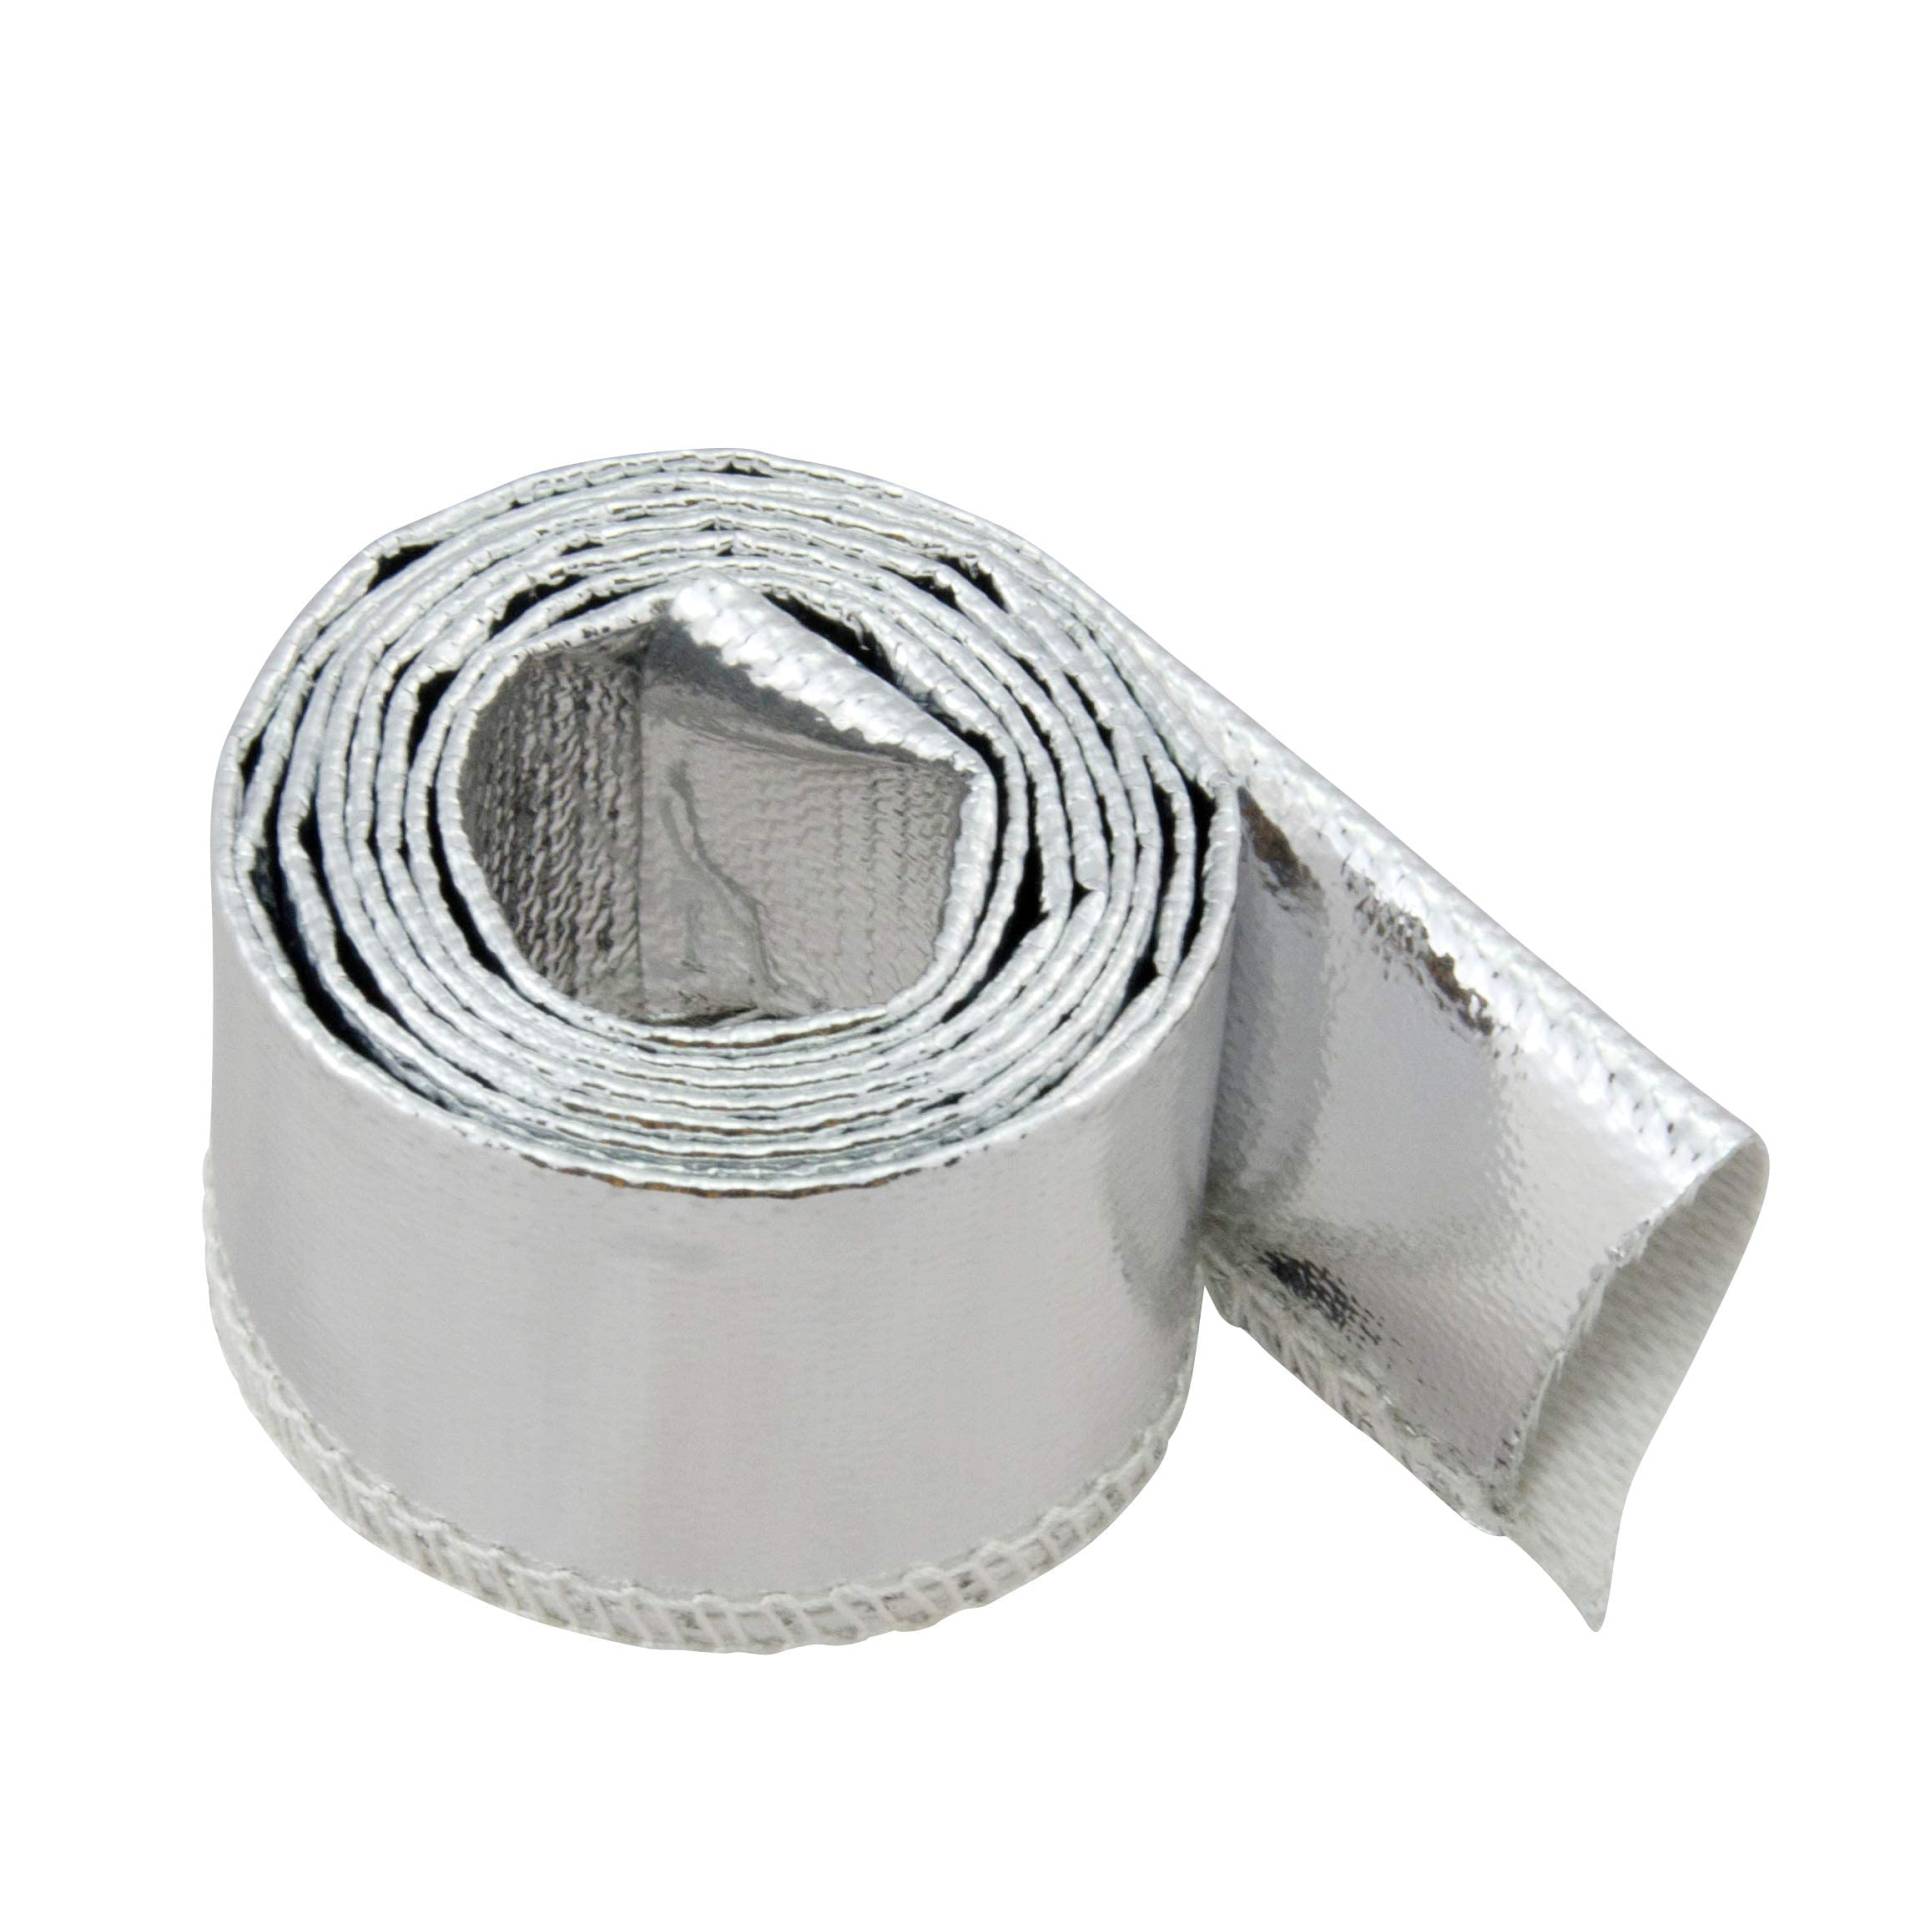 1m Aluminium Hitzeschutzschlauch - 16mm Innendurchmesser für Leitungen, Schläuche und Kabelbäume - Hitzebeständig bis 550°C von DL-Racing